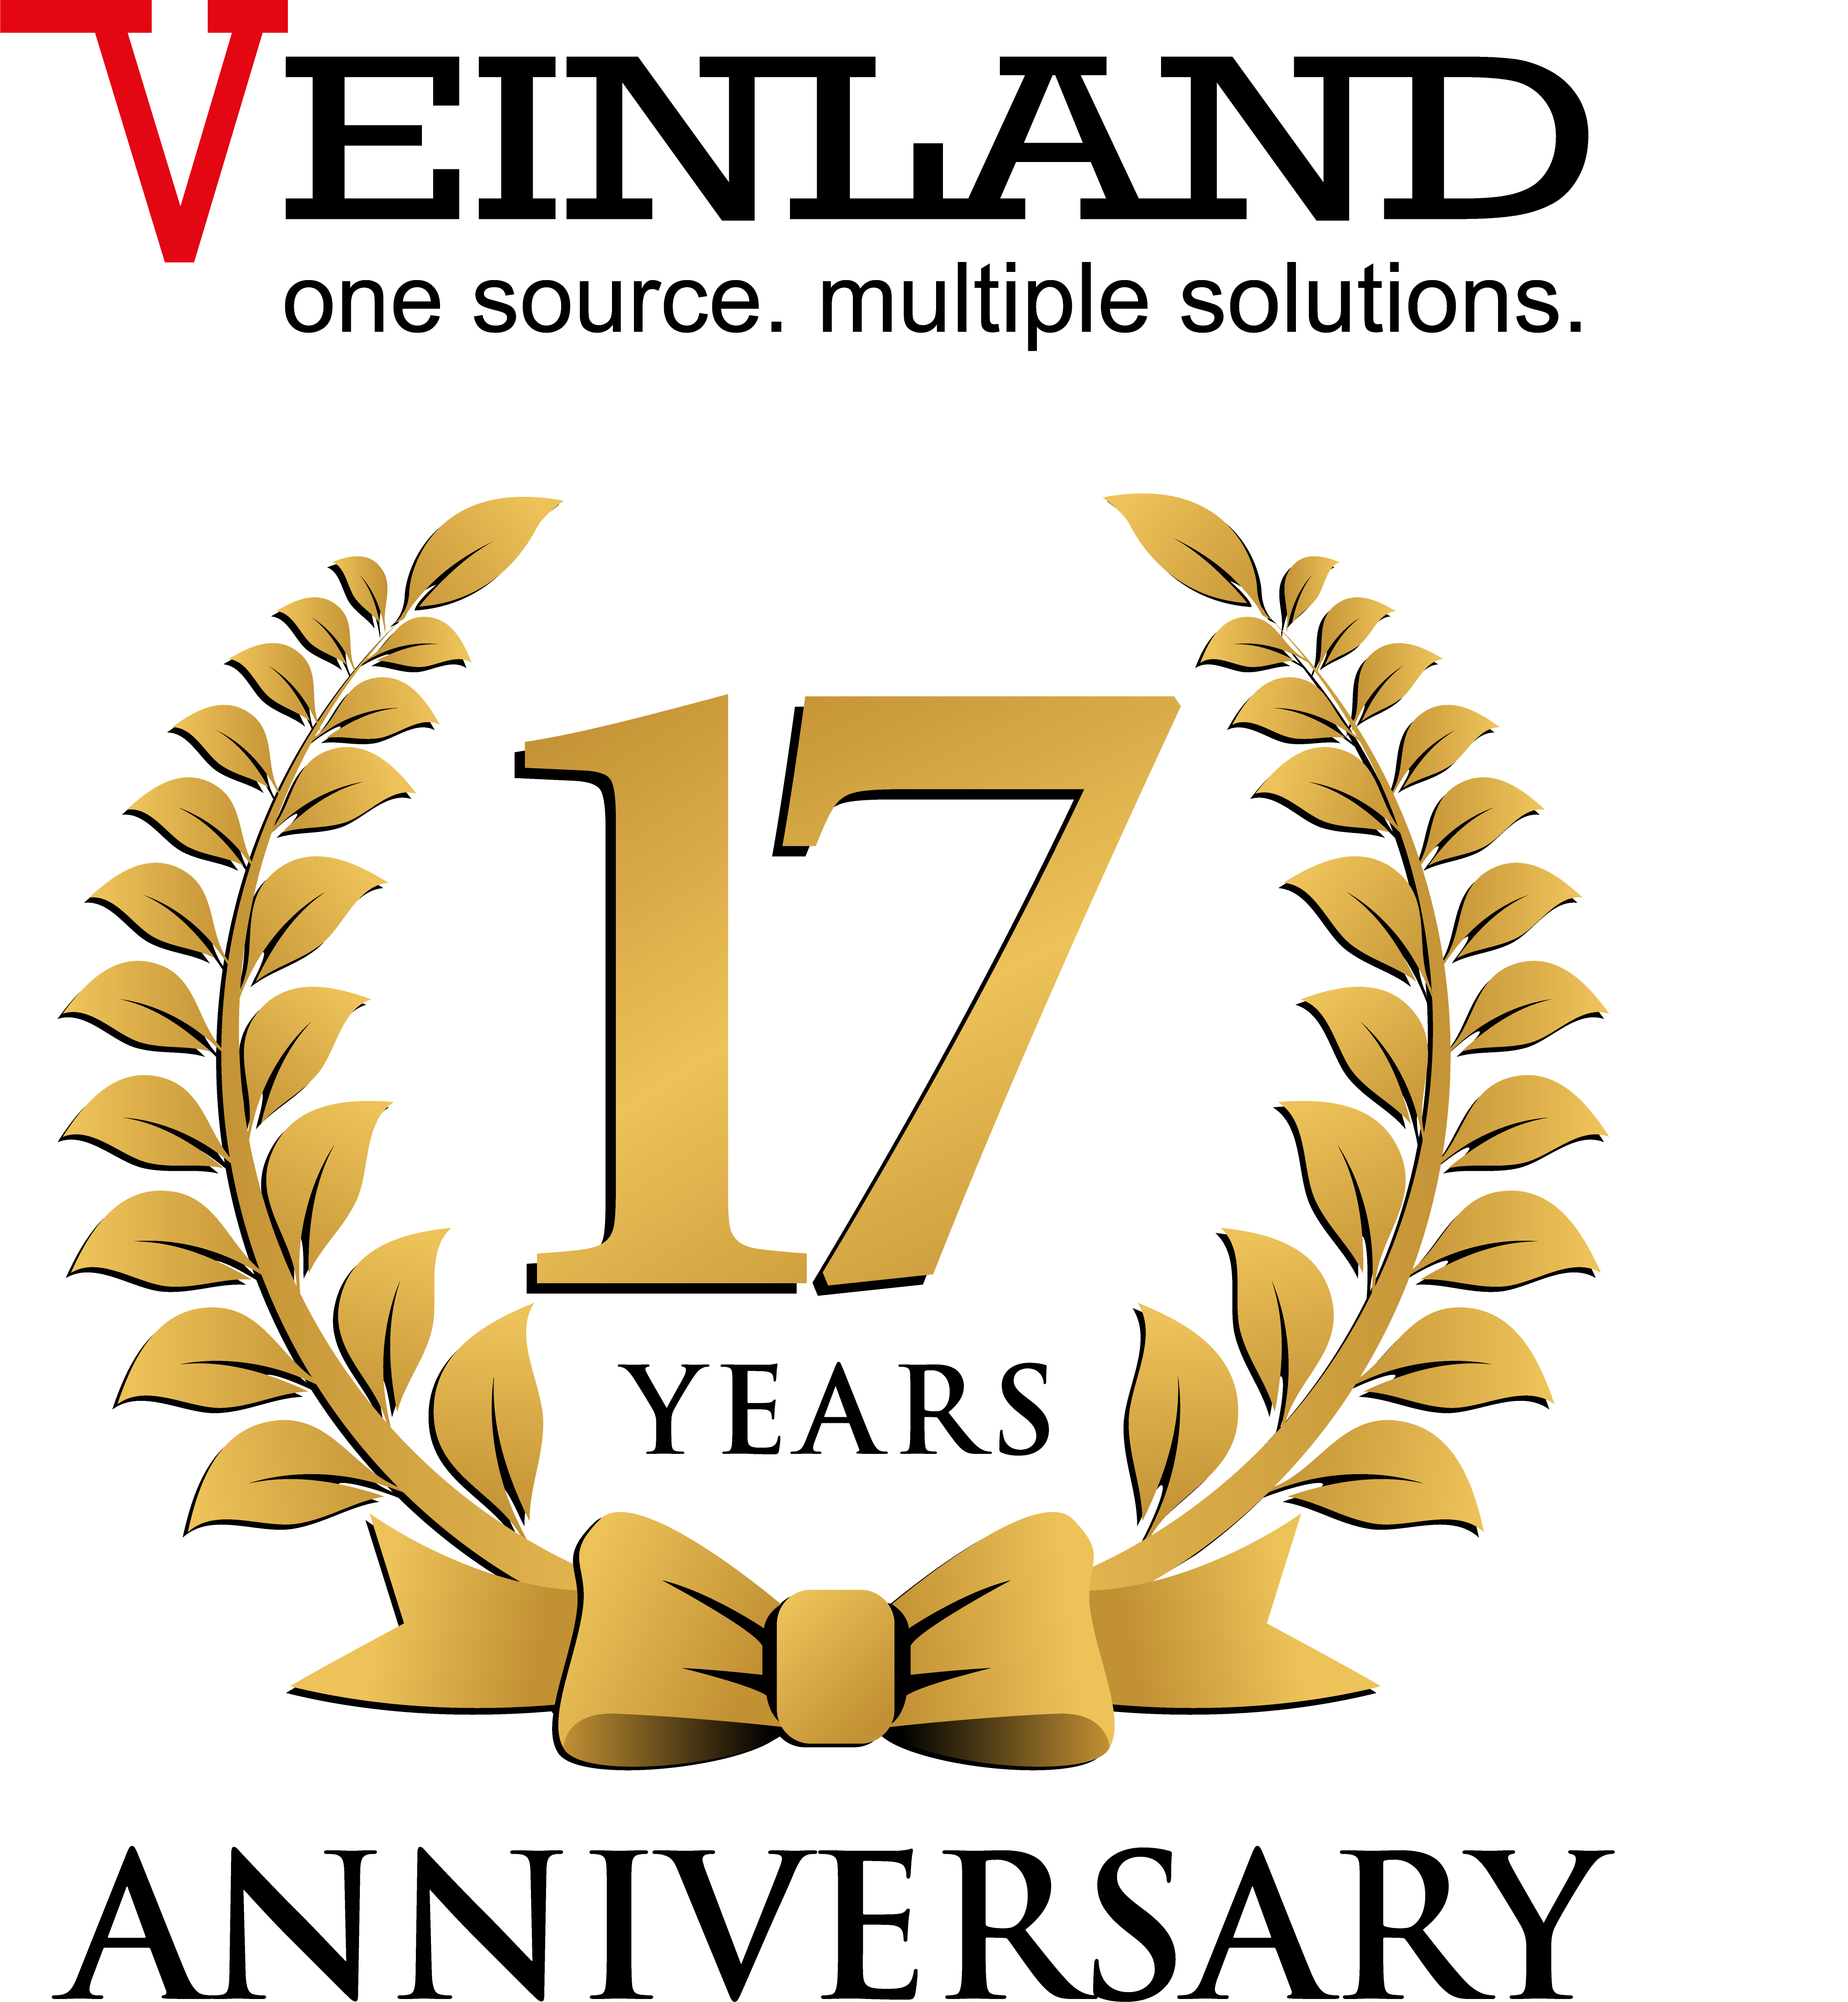 VEINLAND celebrates 17-year anniversary